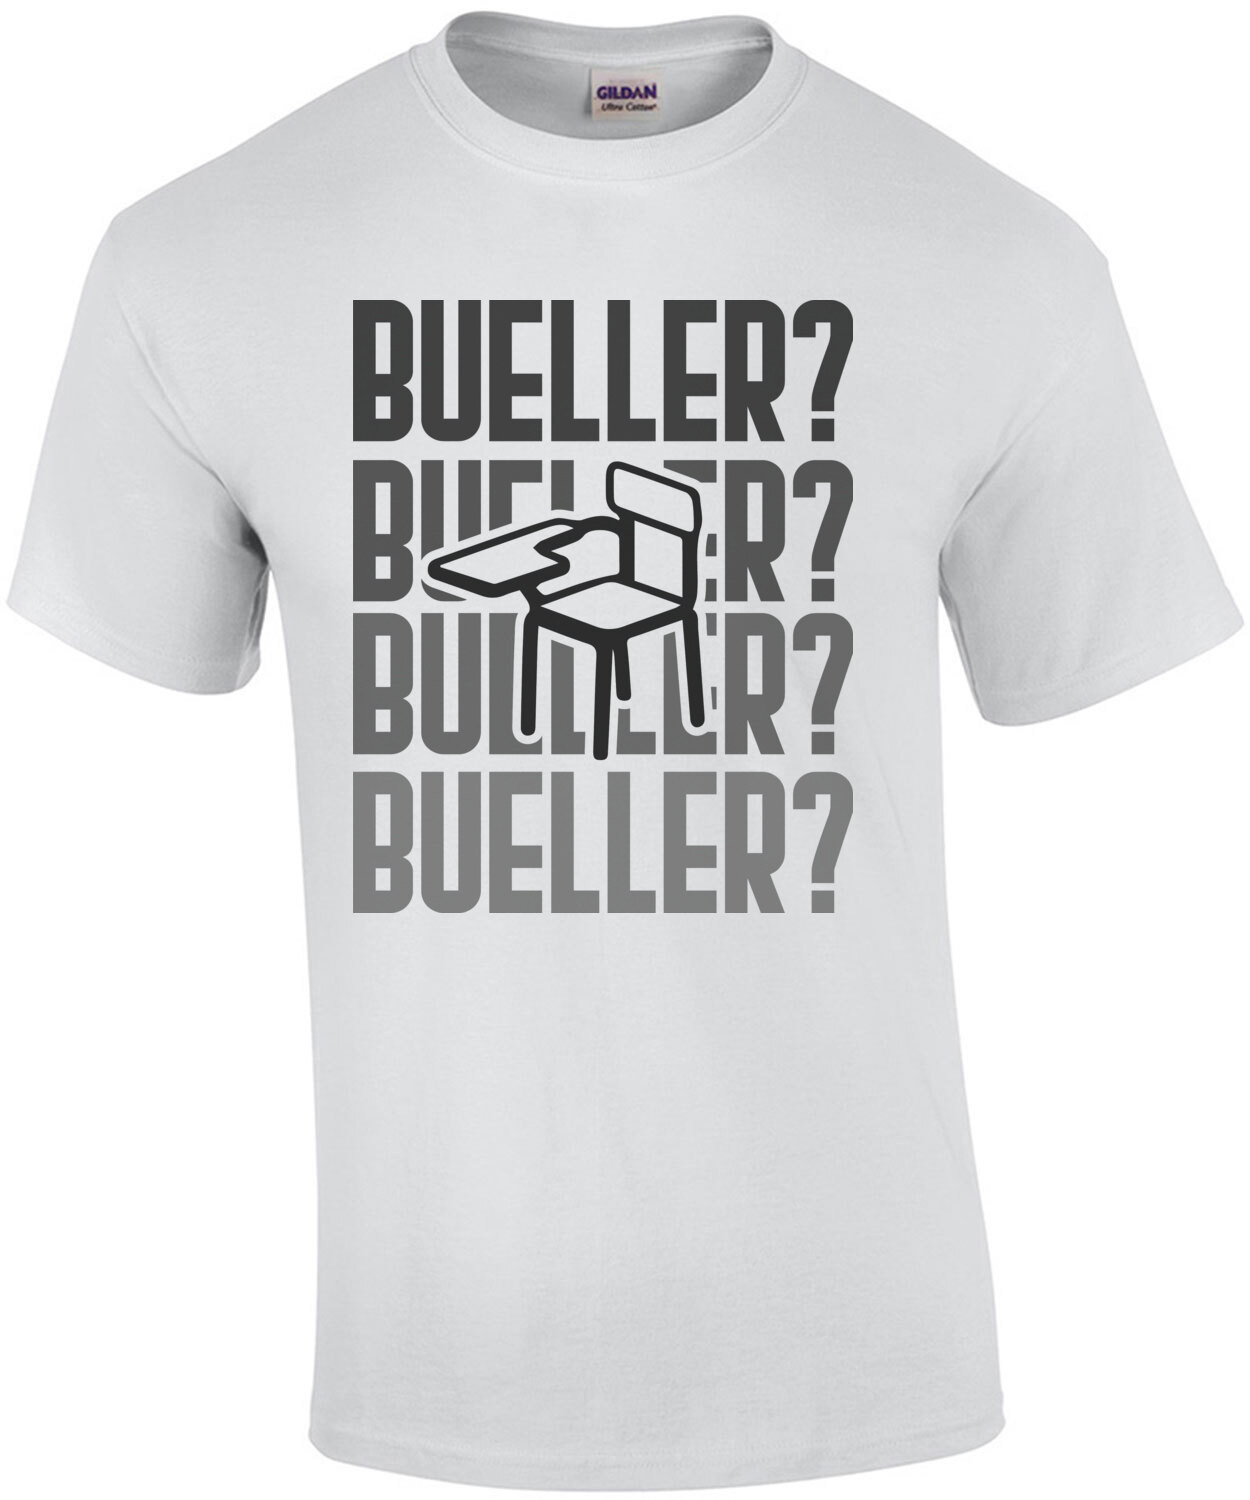 Bueller? Ferris Bueller's Day Off - 80's t-shirt